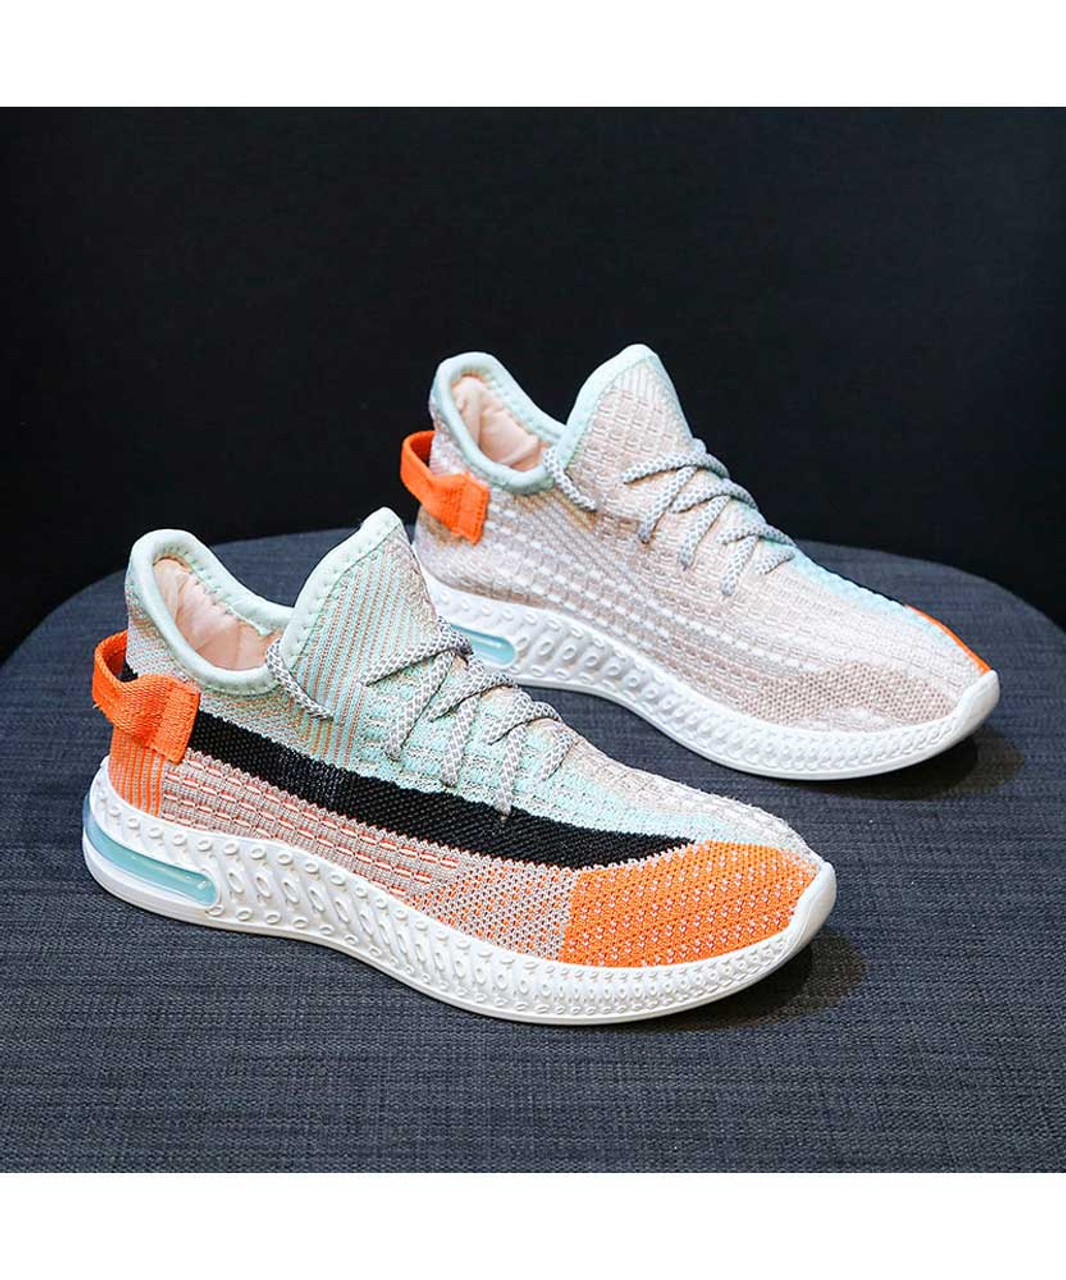 Orange multi color flyknit texture pattern shoe sneaker | Womens shoe ...